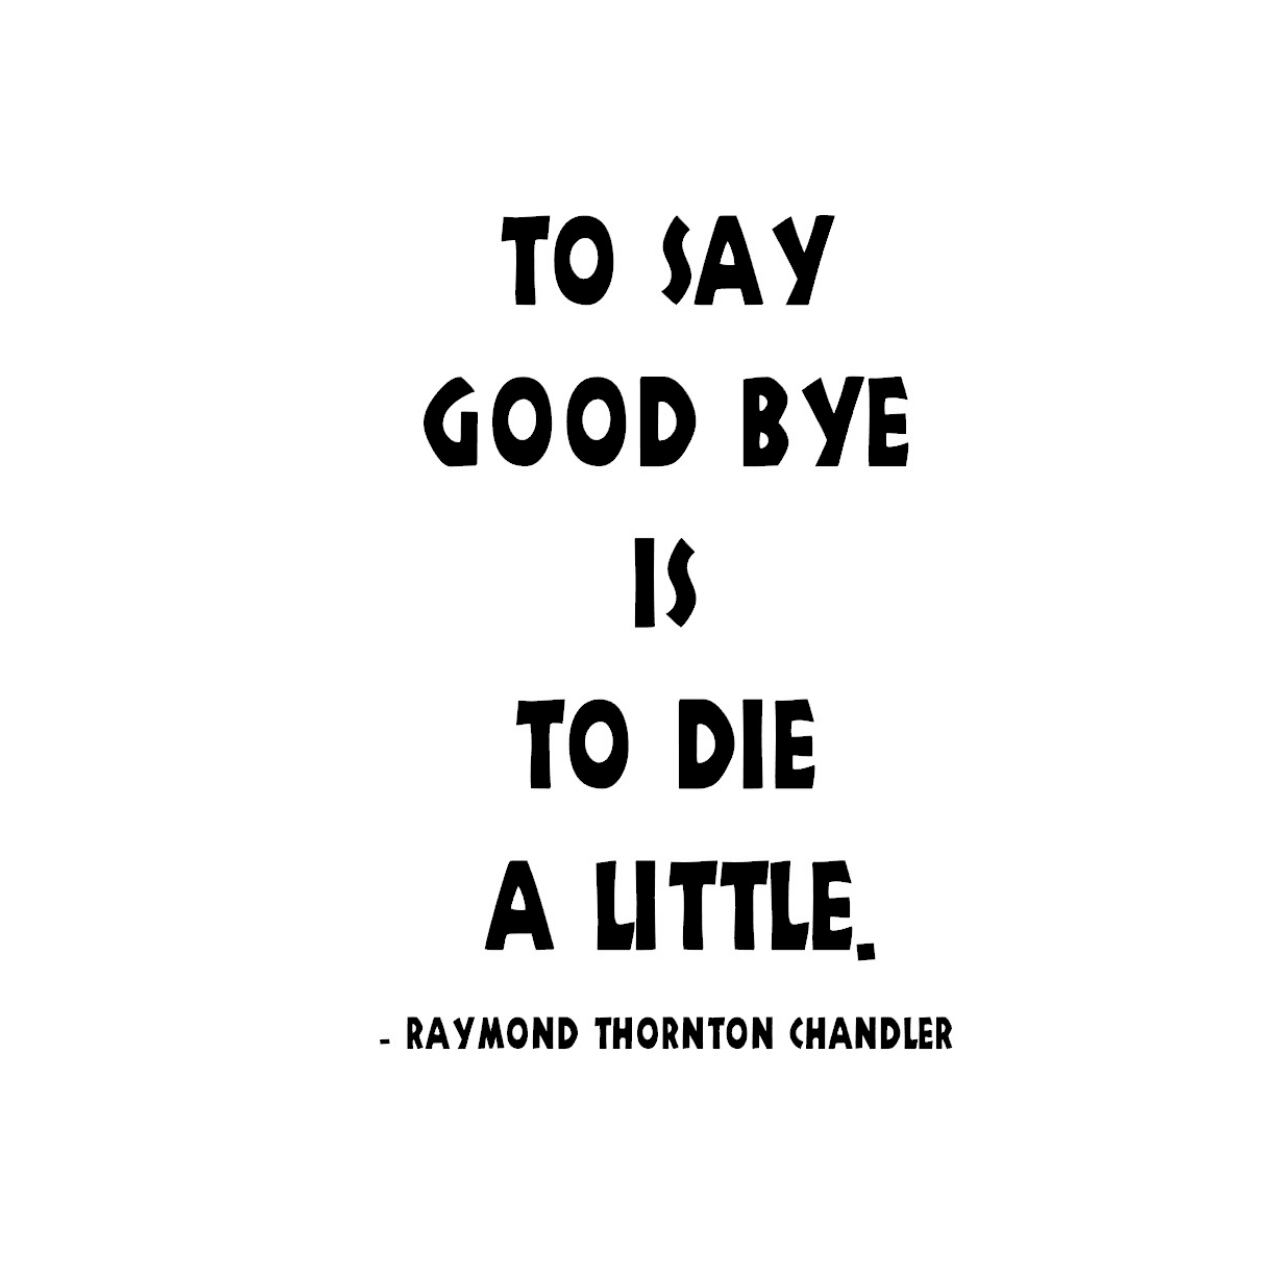 ウォールステッカー 名言 レイモンド チャンドラー 英字 To Say Good Bye Is To Die A Little 黒 光沢 Iby アイバイ ウォールステッカー 通販